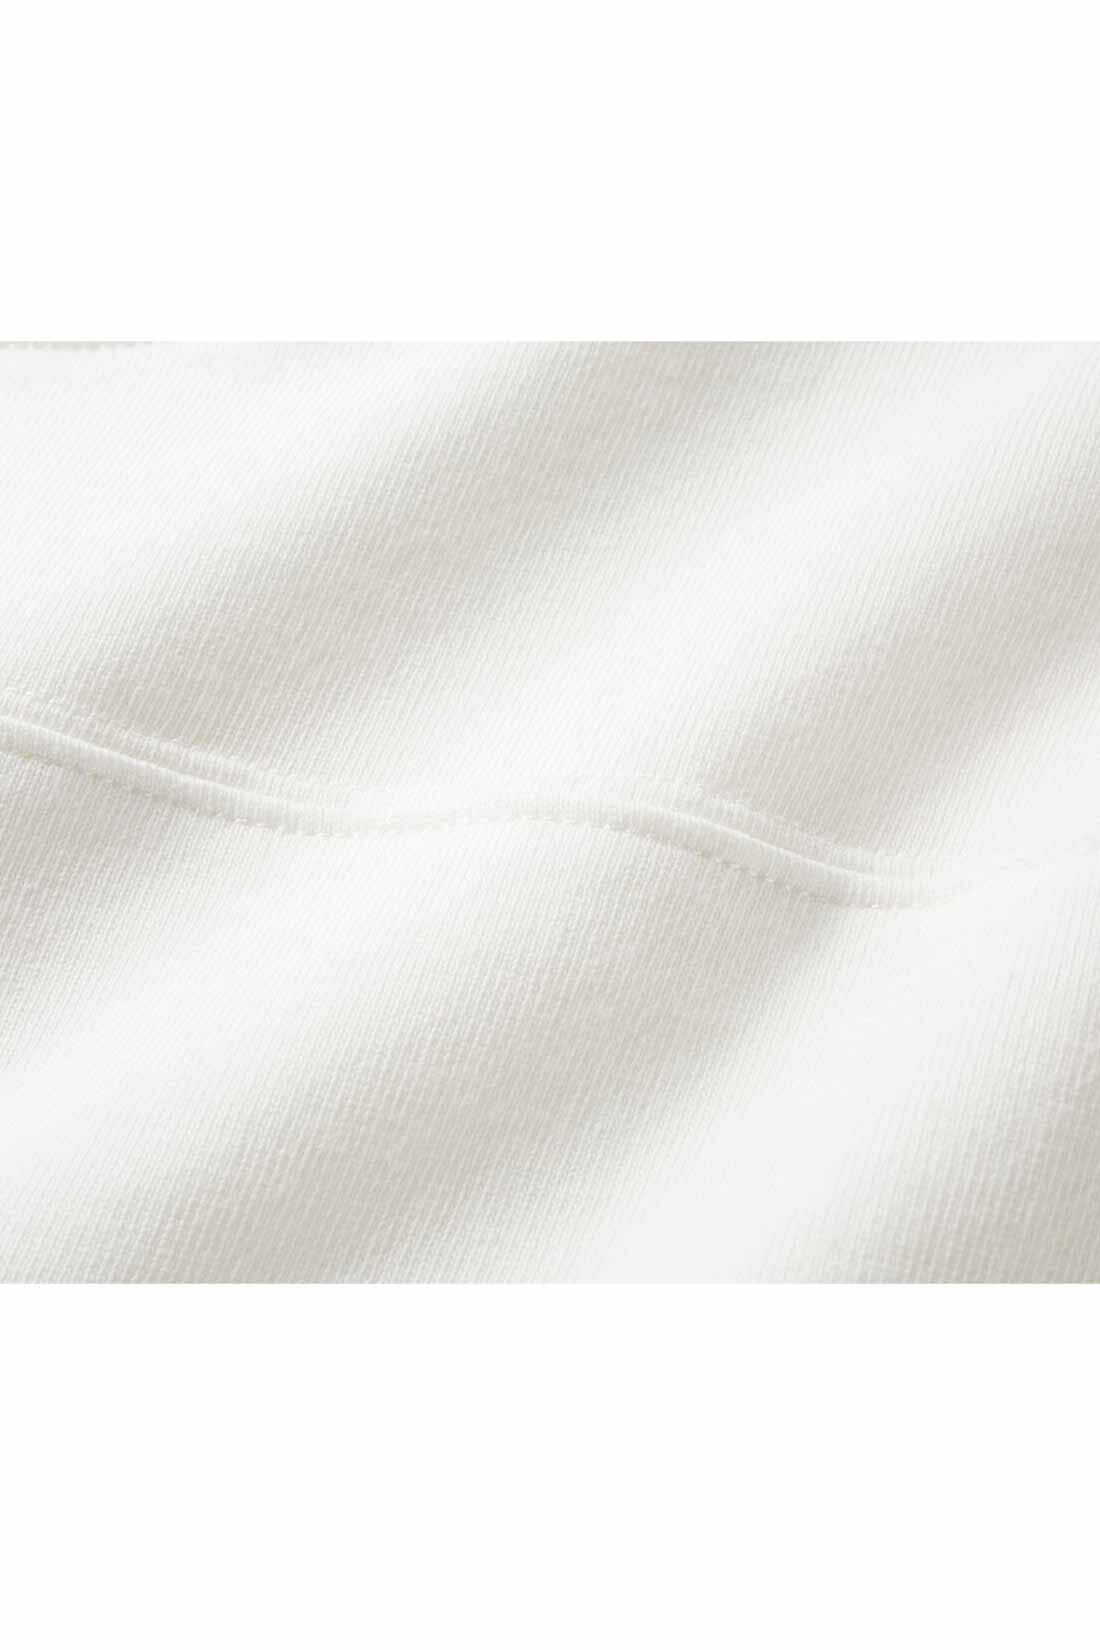 IEDIT|【コーデ買いキャンペーン】IEDIT[イディット]　小森美穂子さんコラボ コットン素材のフットボール風Tシャツ〈ホワイト〉|ヘビーオンスの綿100％素材ながら、ゴワつかずしなやかな肌ざわり。